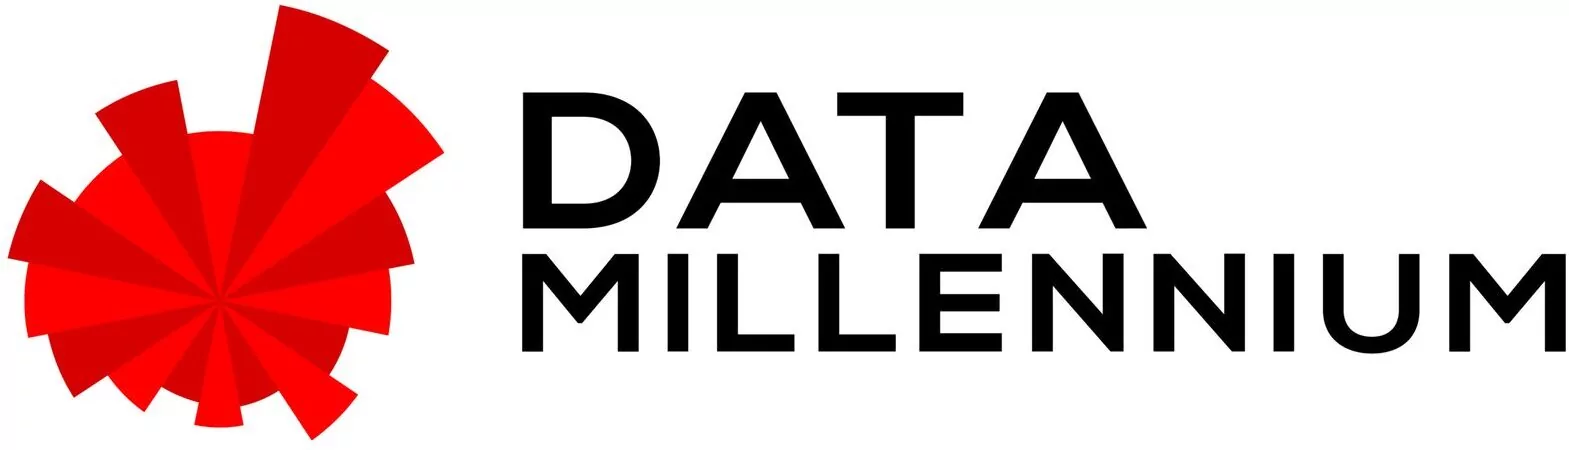 Data Millennium